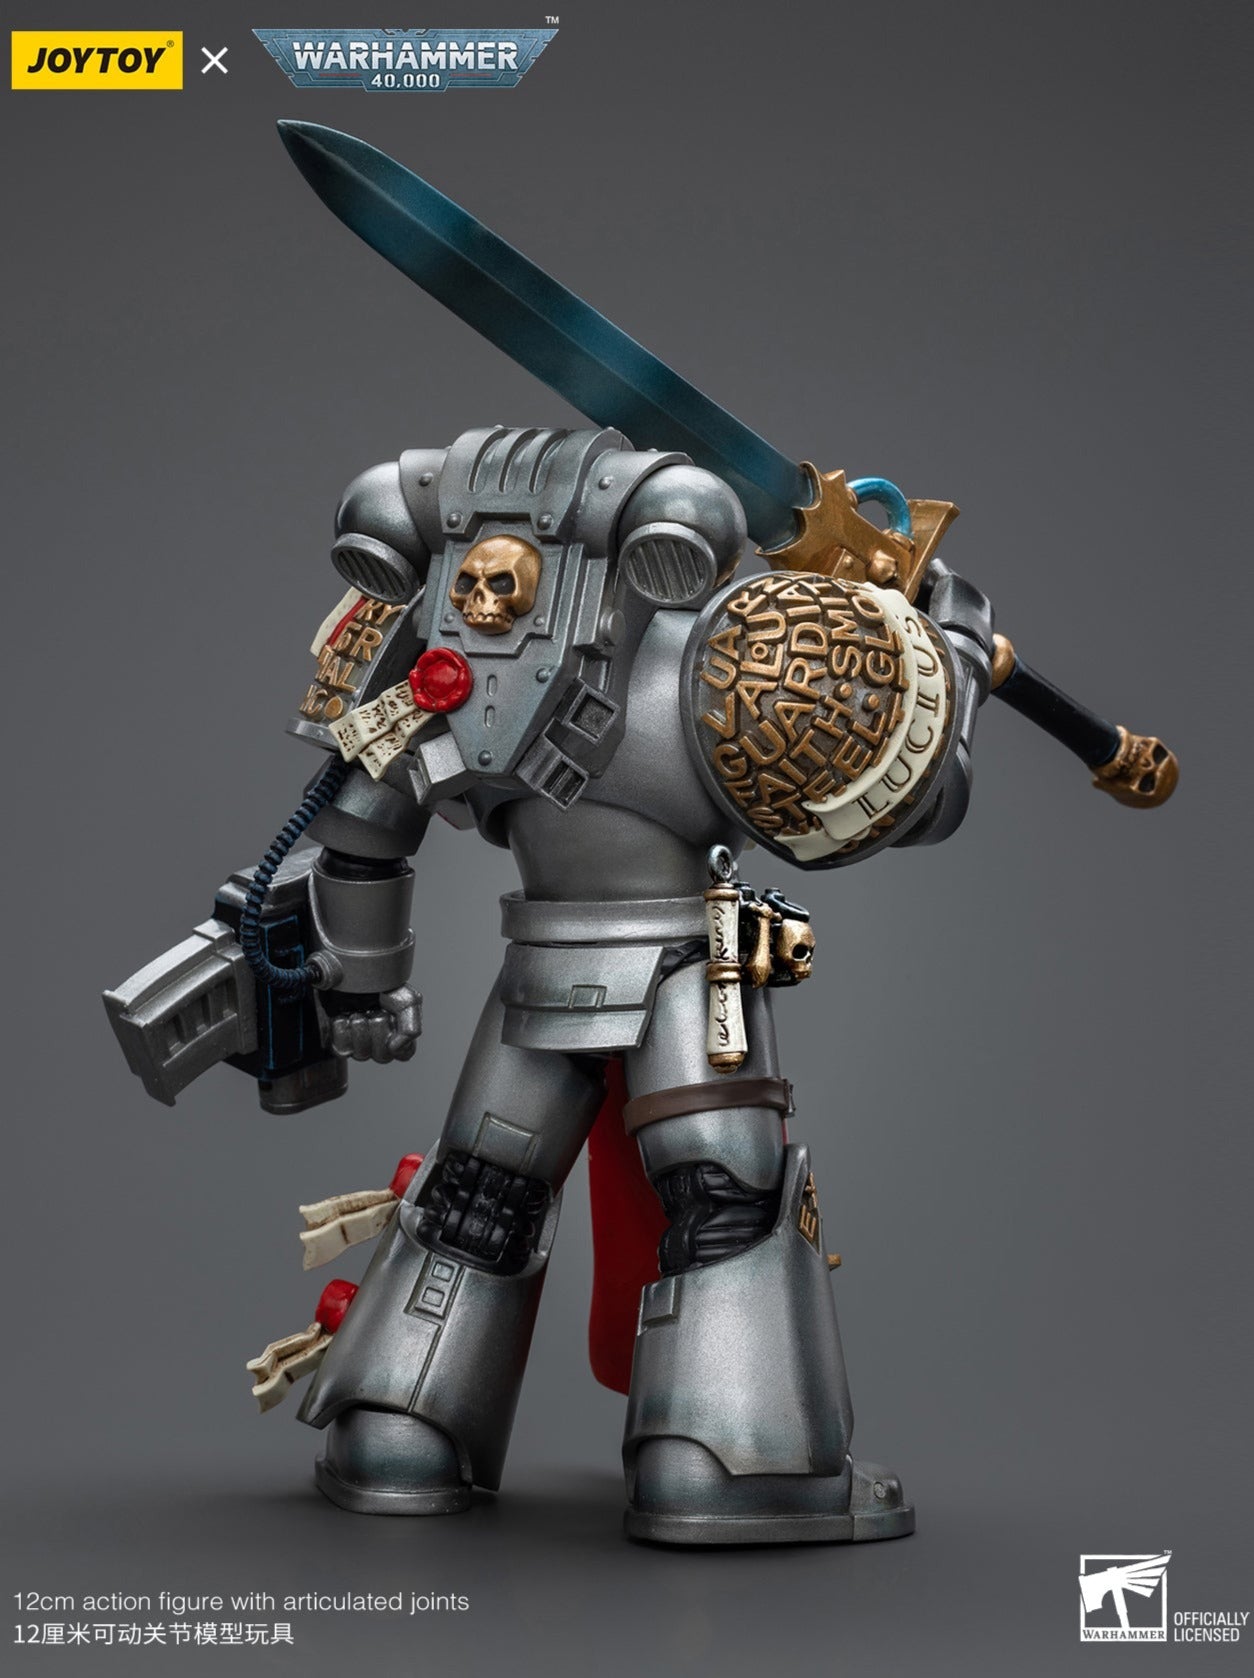 Warhammer 40k: Grey Knights: Strike Squad: Justicar: Joy Toy